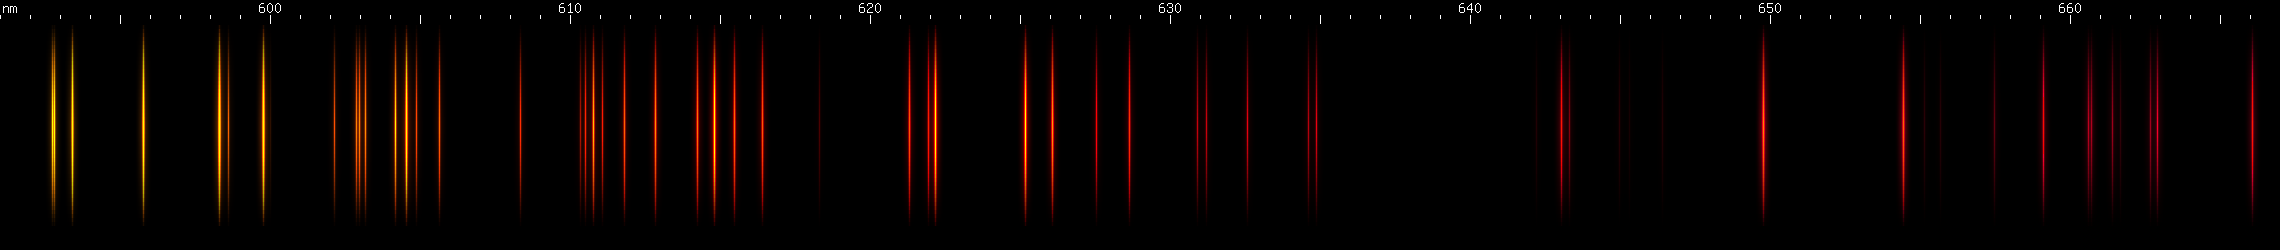 Spectral lines of Niobium.